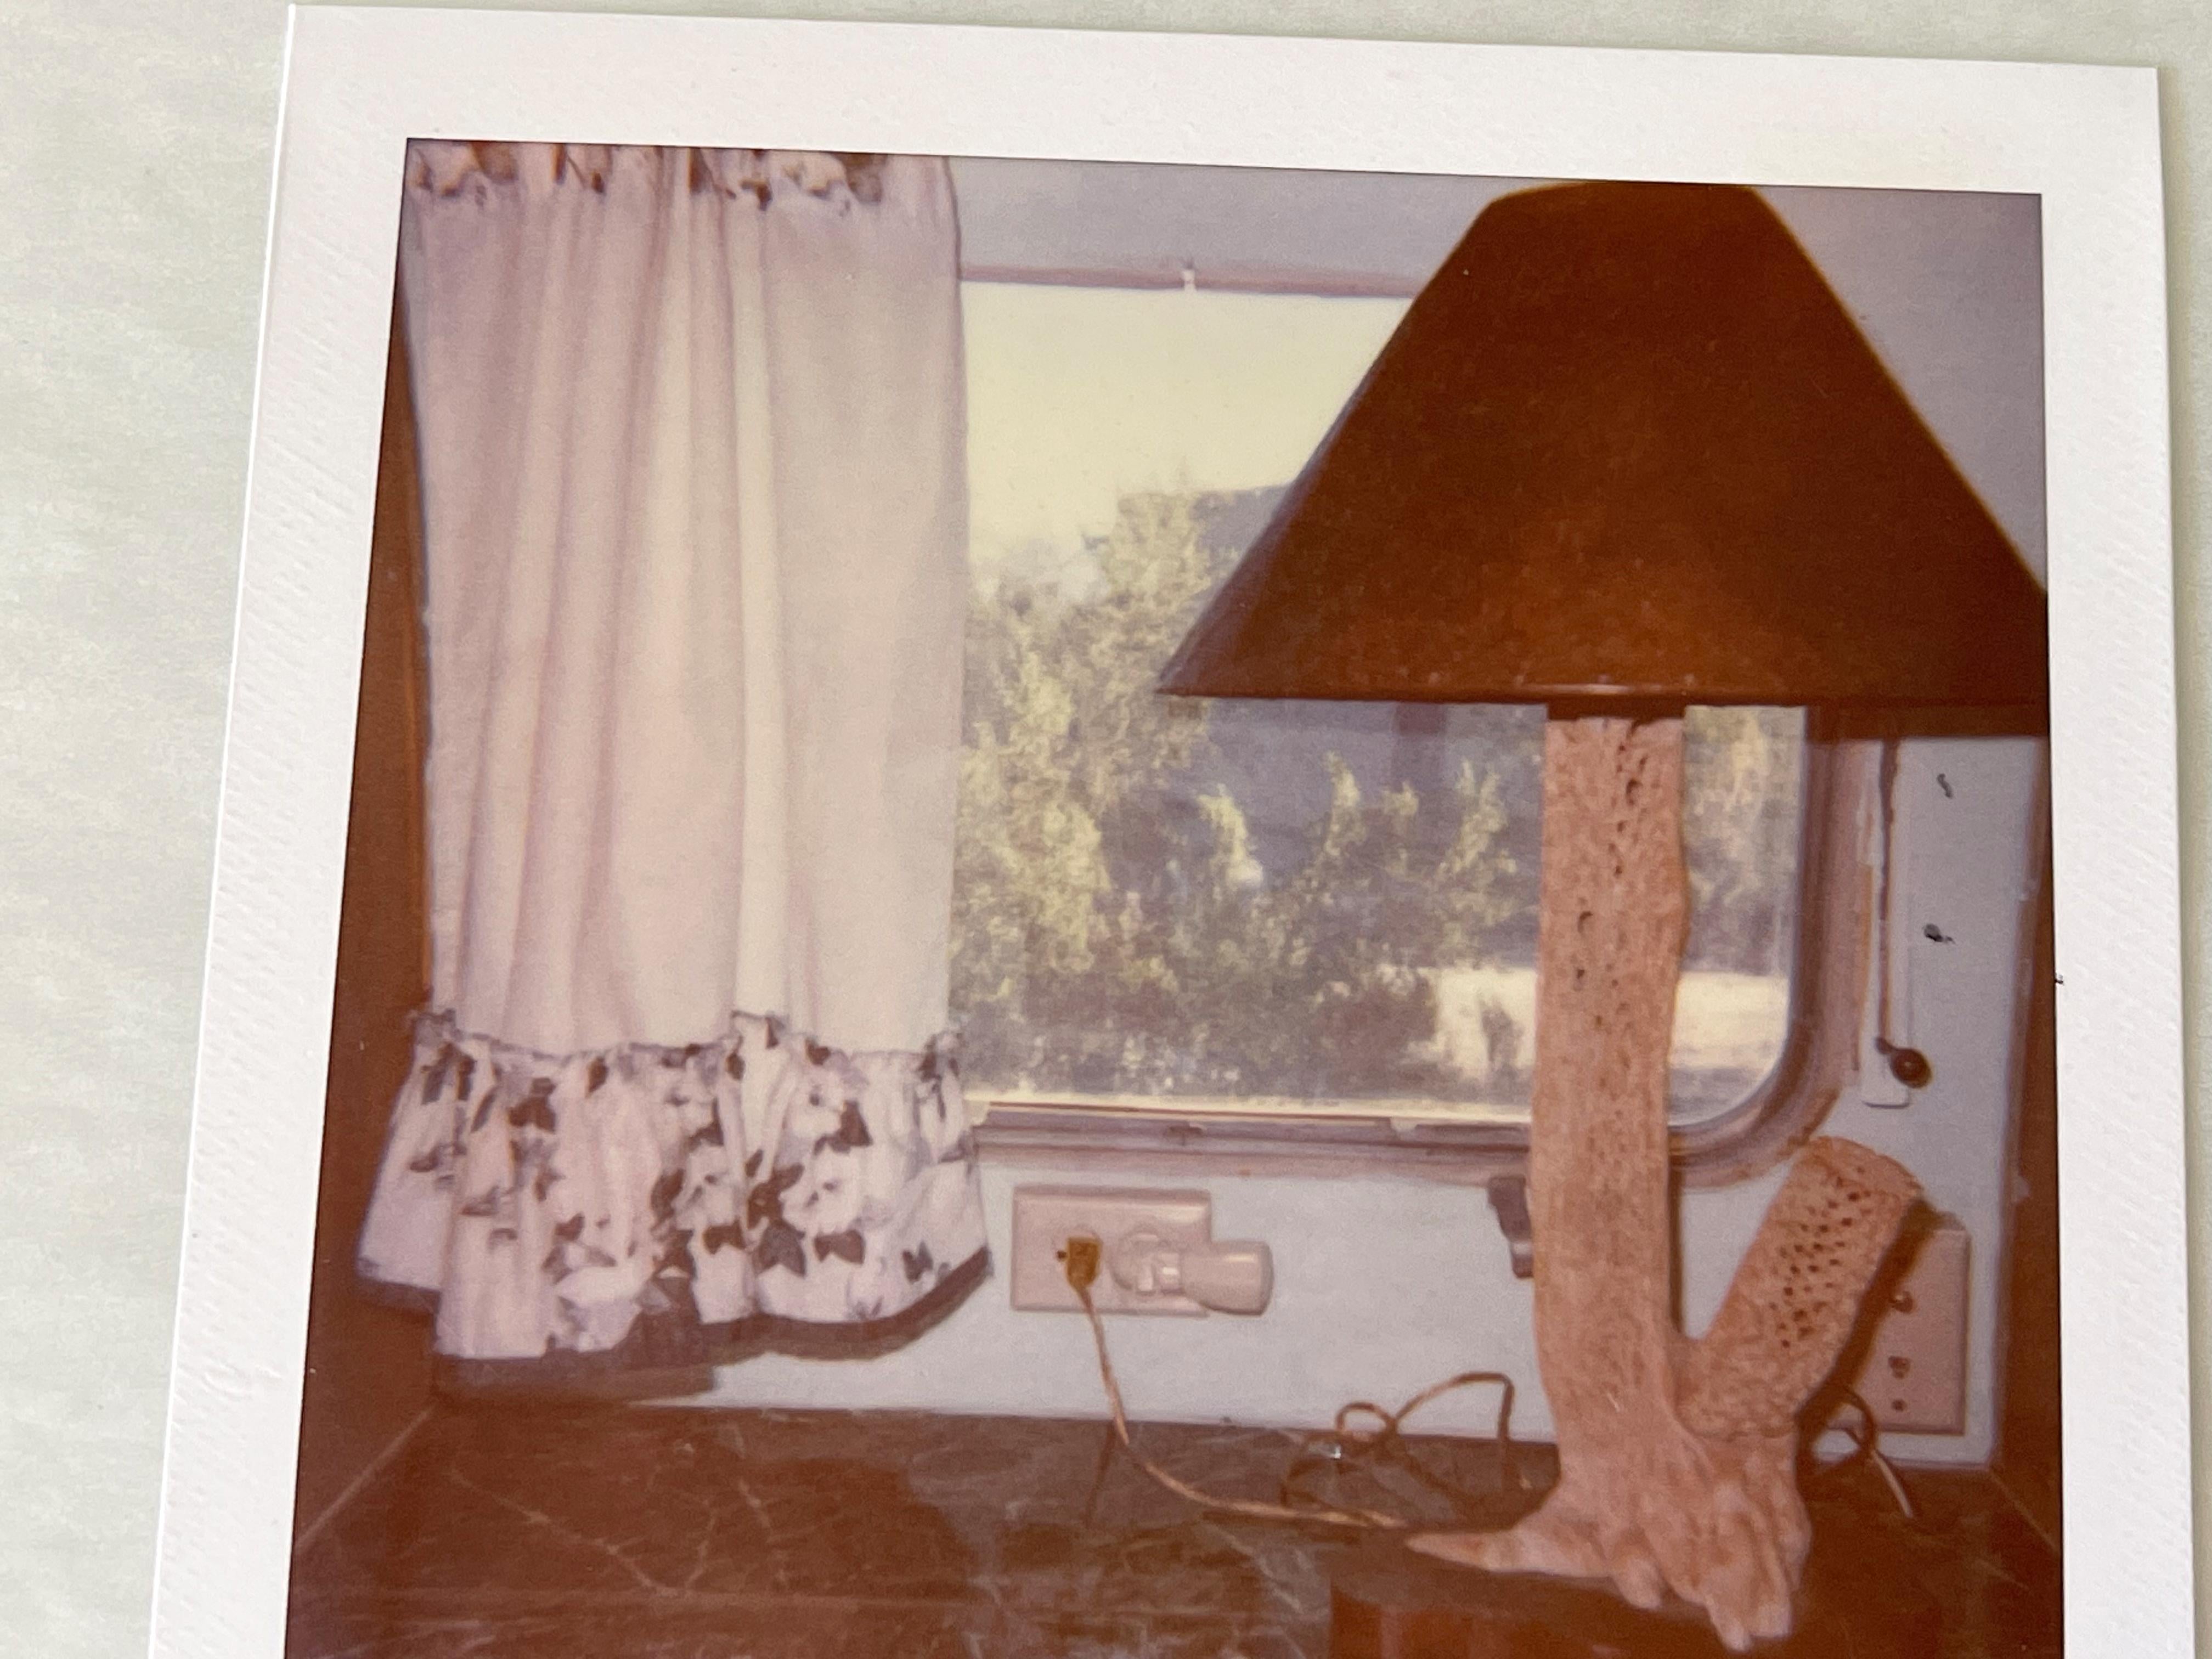 La lampe (Sidewinder) - Pièce unique d'origine Polaroid - Photograph de Stefanie Schneider